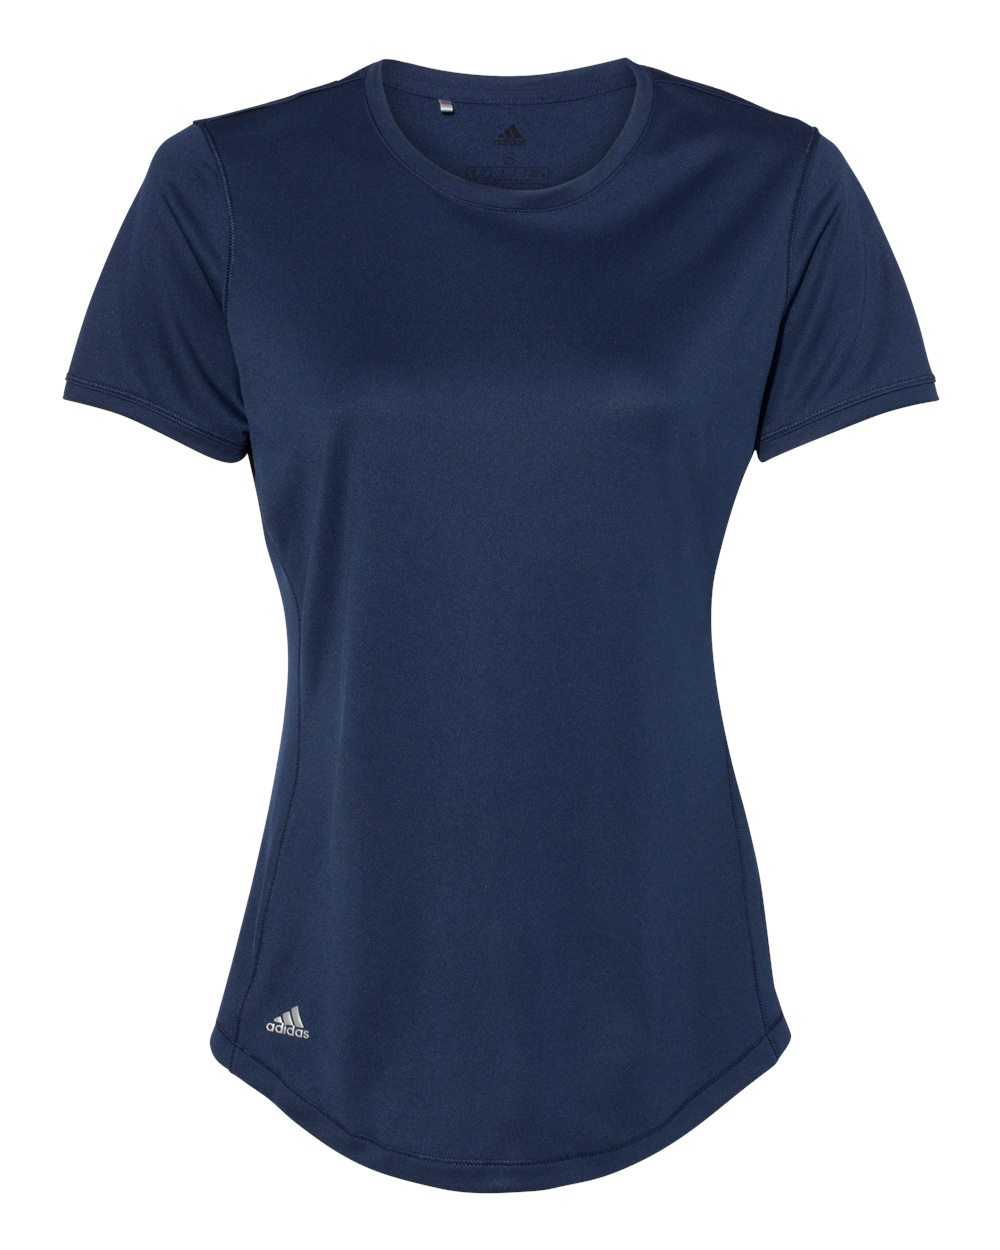 Adidas A377 Women's Sport T-Shirt - Collegiate Navy - HIT a Double